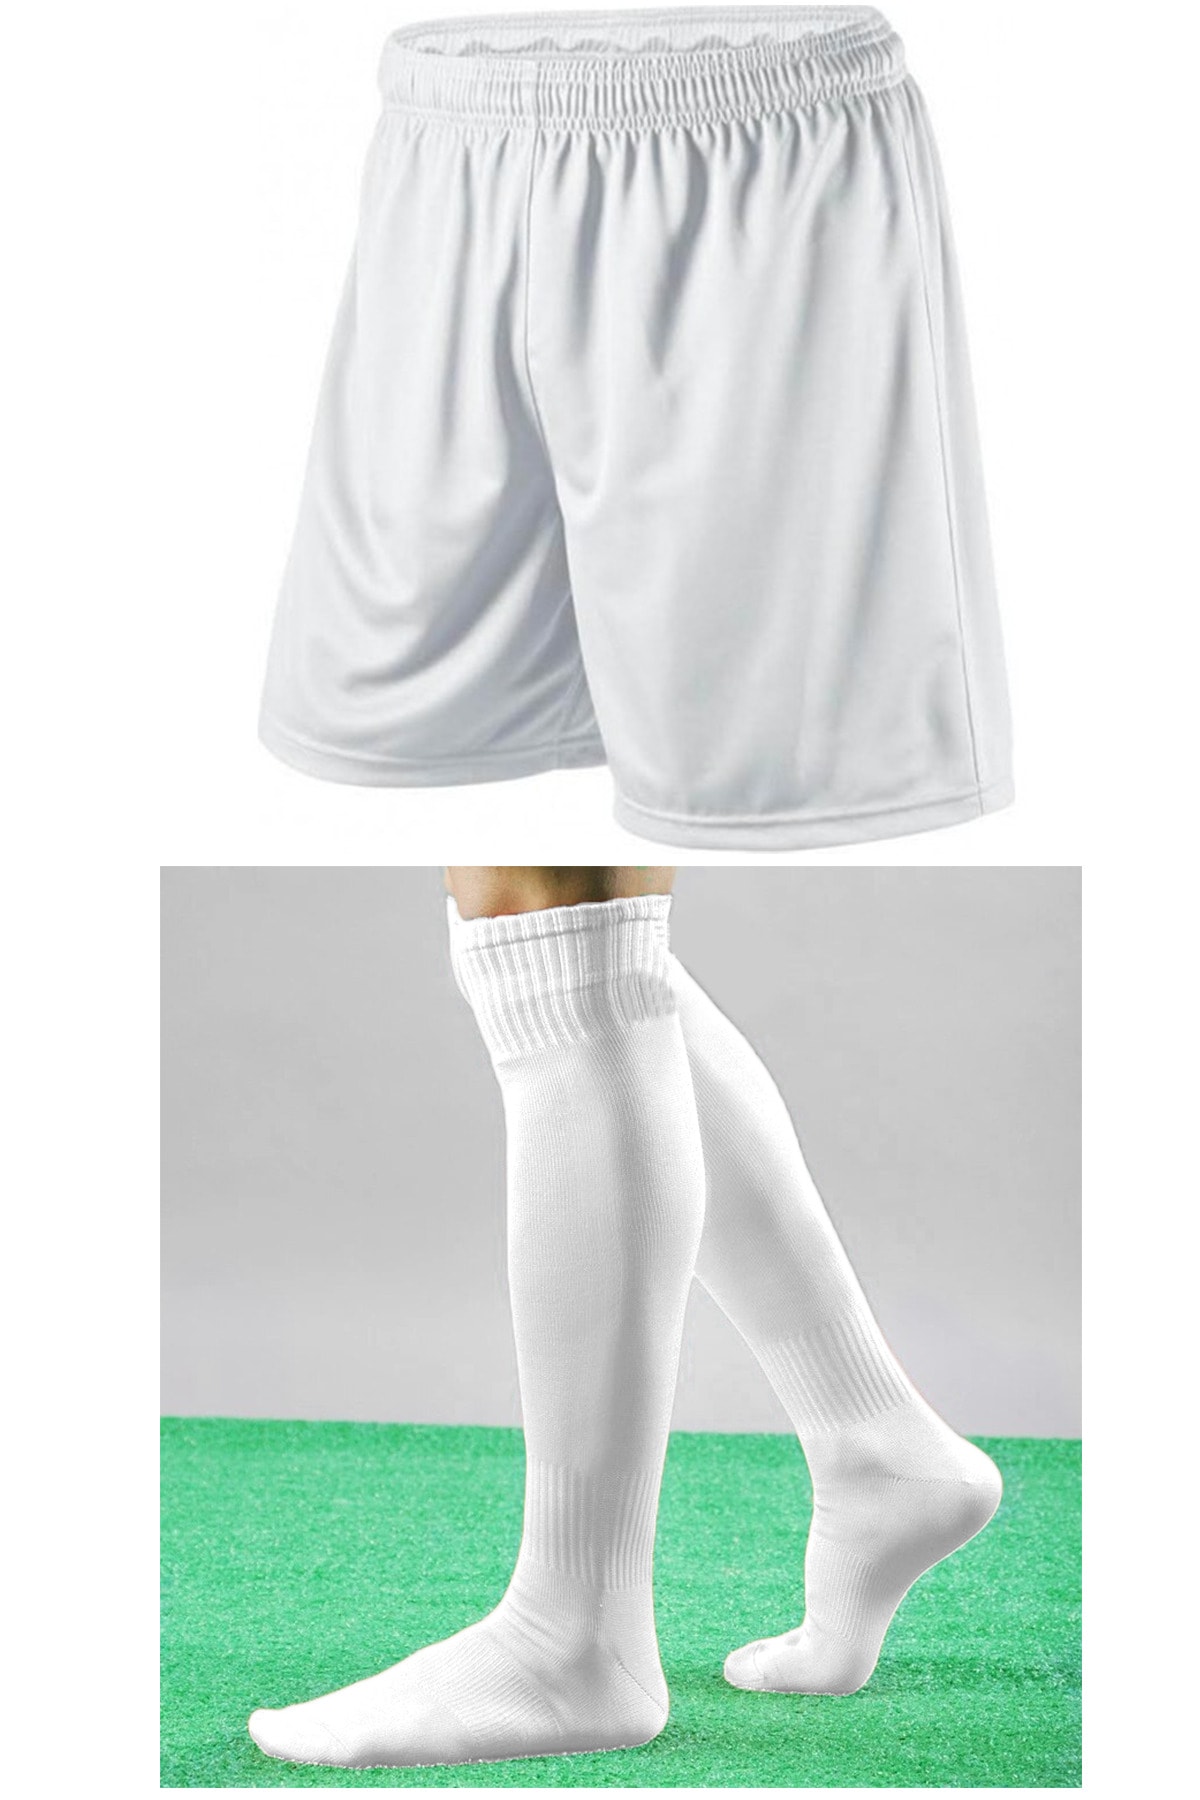 444 marka Futbol Şortu Ve Futbol Çorabı Seti Sporcu Şortu Ve Çorabı Şort Ve Çorap Futbol Şort Çorap Seti VB11260